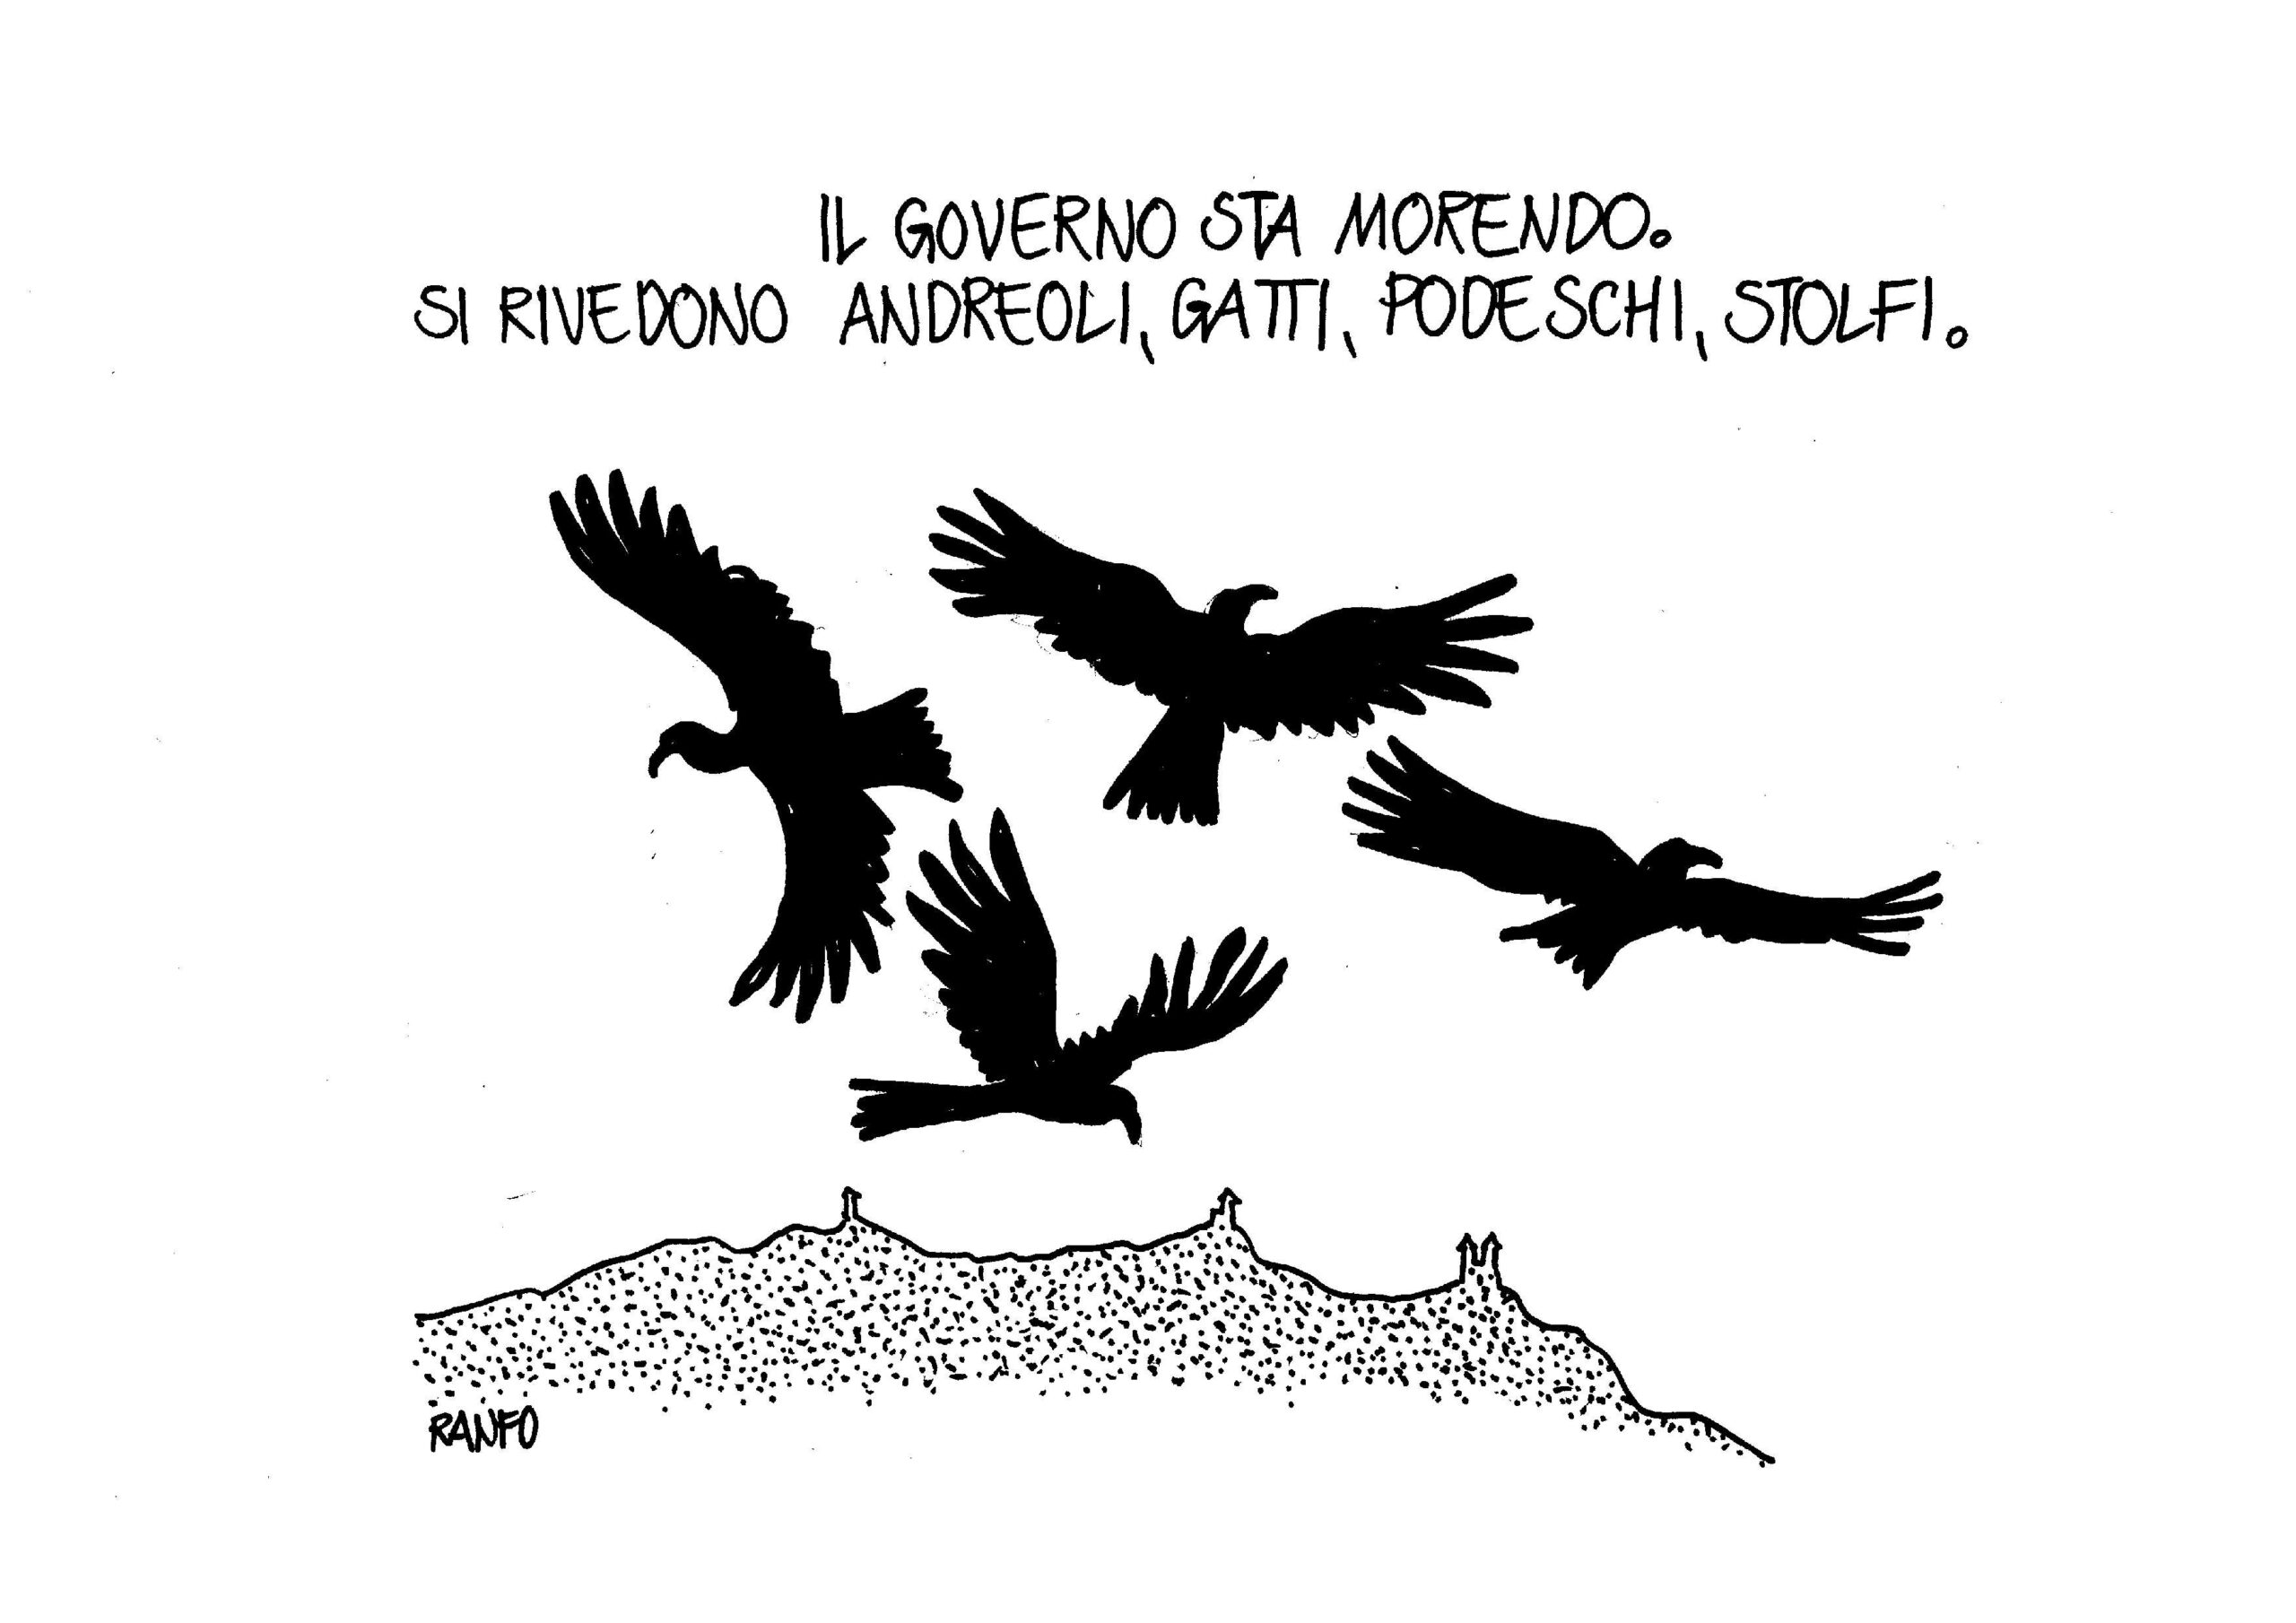 San Marino. Ranfo tra il declino del governo e il ritorno degli avvoltoi